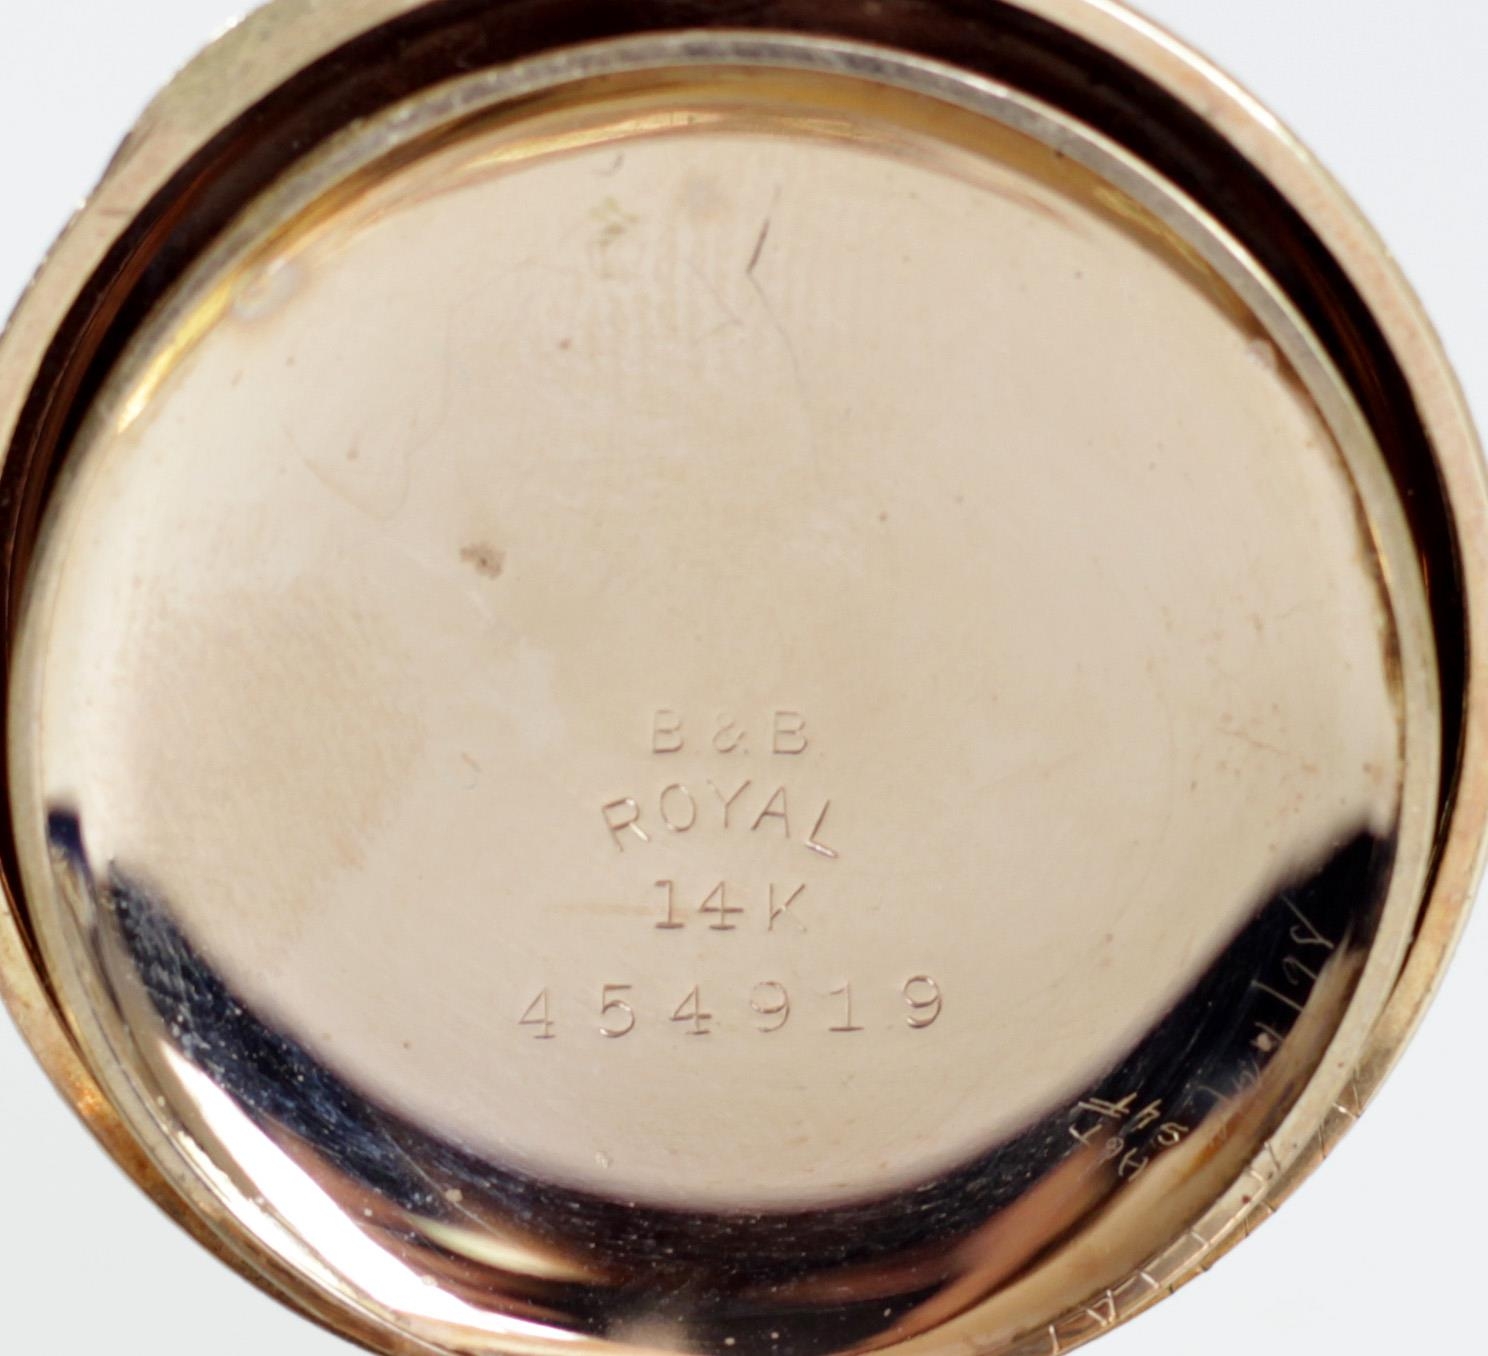 Hampden, a full hunter pocket watch, cuvette stamped B&B, ROYAL, 14K, 17 jewel adjusted movement, - Image 4 of 5